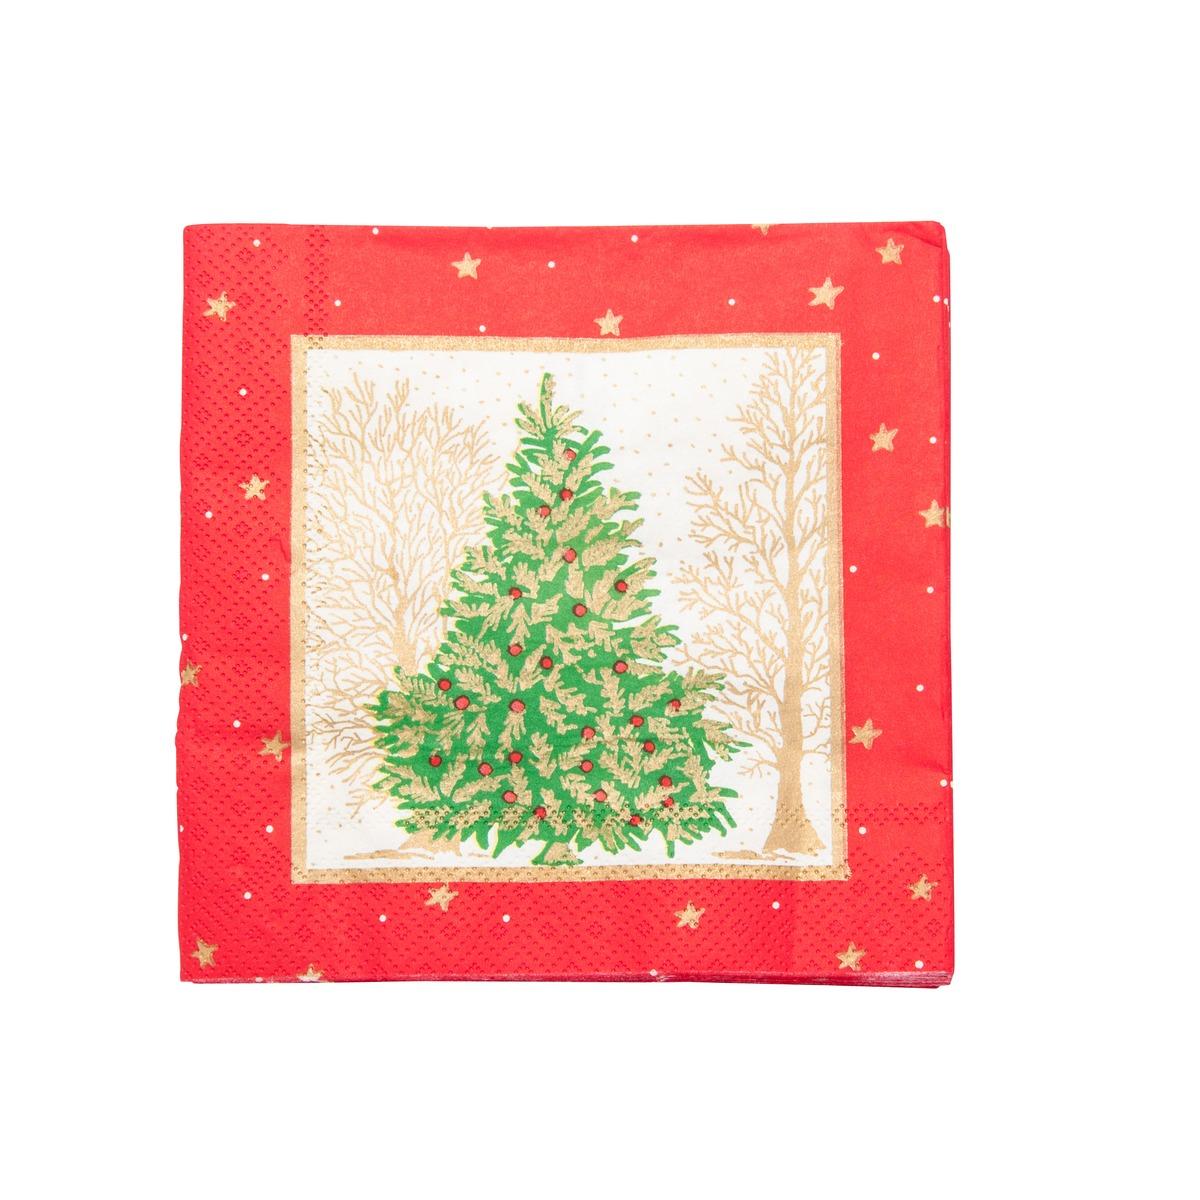 Lot de 20 serviettes en papier motif sapin de Noël - 33 x 33 cm - Jaune or, Rouge